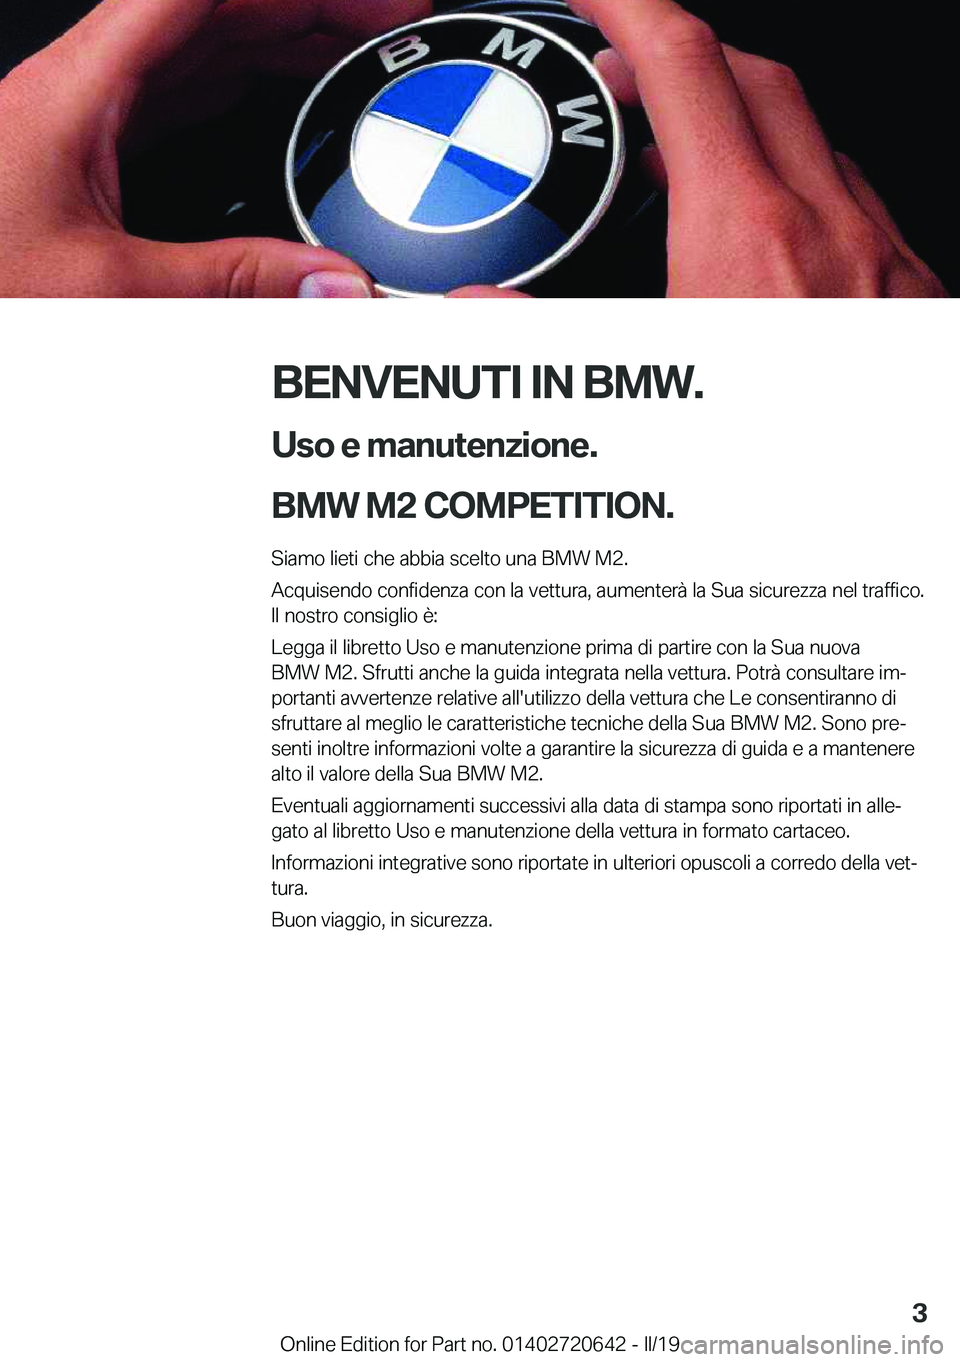 BMW M2 2020  Libretti Di Uso E manutenzione (in Italian) �B�E�N�V�E�N�U�T�I��I�N��B�M�W�.�U�s�o��e��m�a�n�u�t�e�n�z�i�o�n�e�.
�B�M�W��M�2��C�O�M�P�E�T�I�T�I�O�N�.�
�S�i�a�m�o��l�i�e�t�i��c�h�e��a�b�b�i�a��s�c�e�l�t�o��u�n�a��B�M�W��M�2�. �A�c�